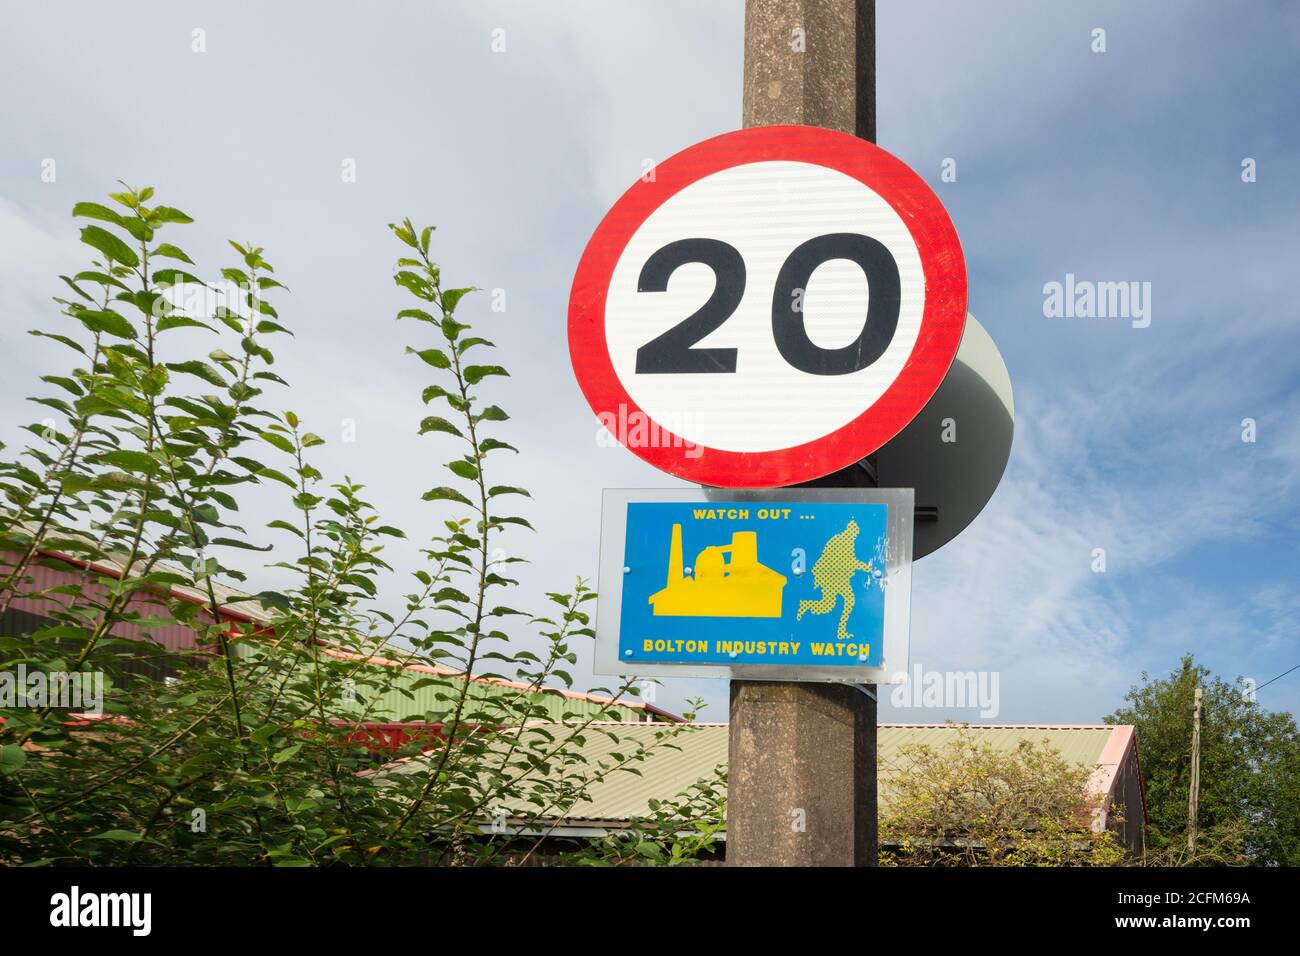 Achten Sie auf Bolton Industrie Uhr, blau und gelb Schild an Beton Lampe Post Straßenlaterne, 20 mph Zeichen angebracht. Farnworth, Bolton, Großbritannien. Stockfoto